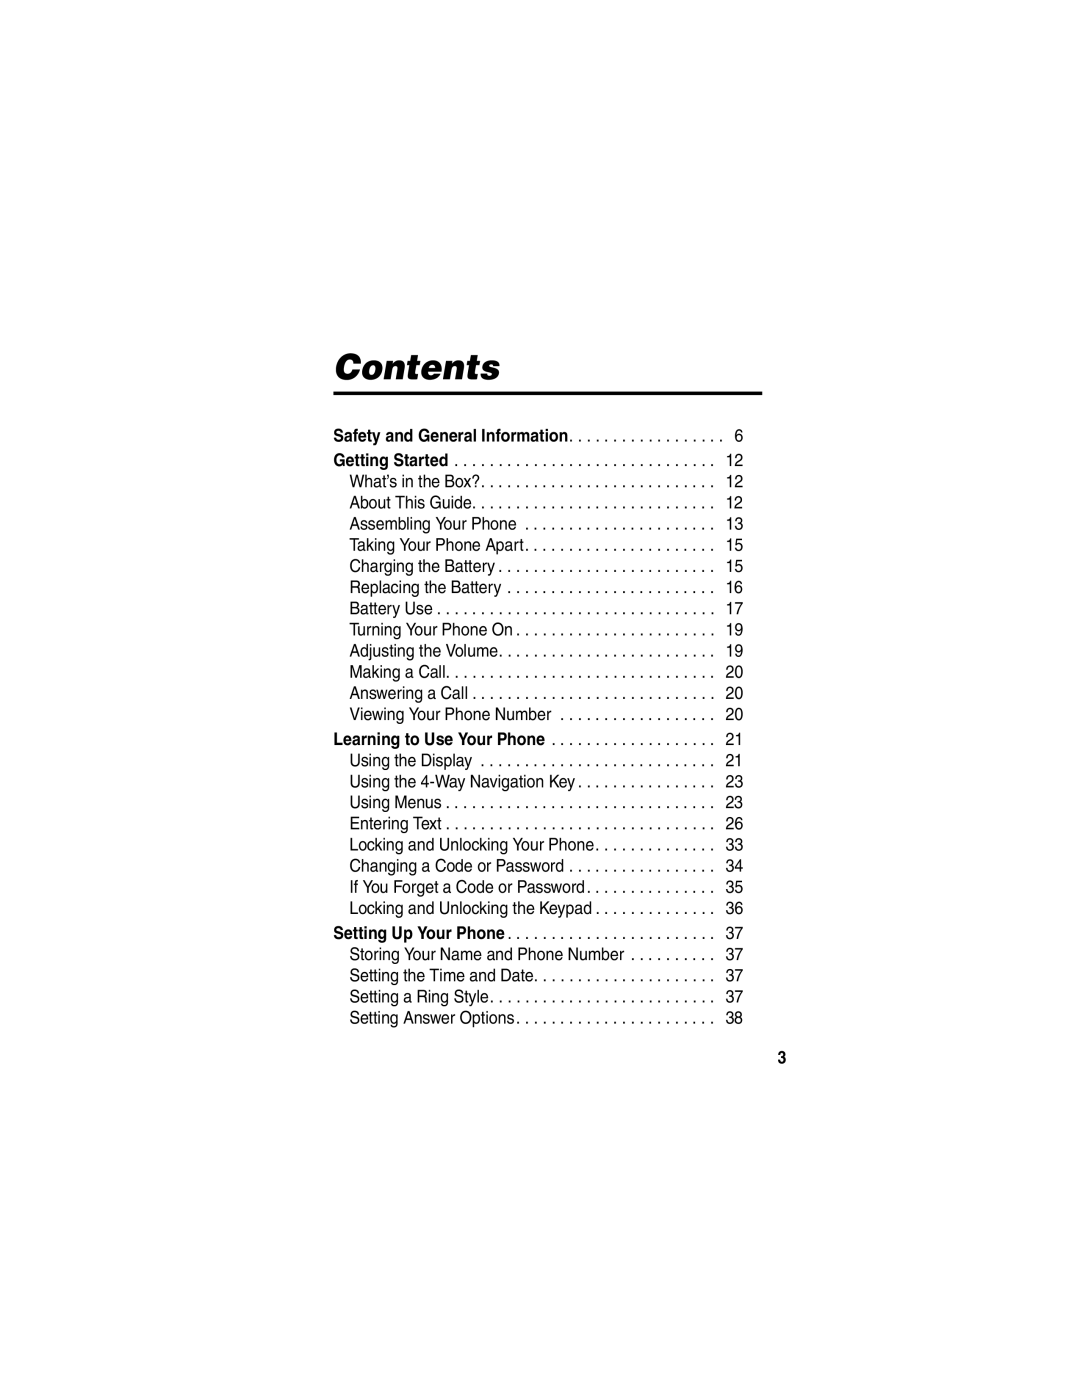 Motorola C353 manual Contents 